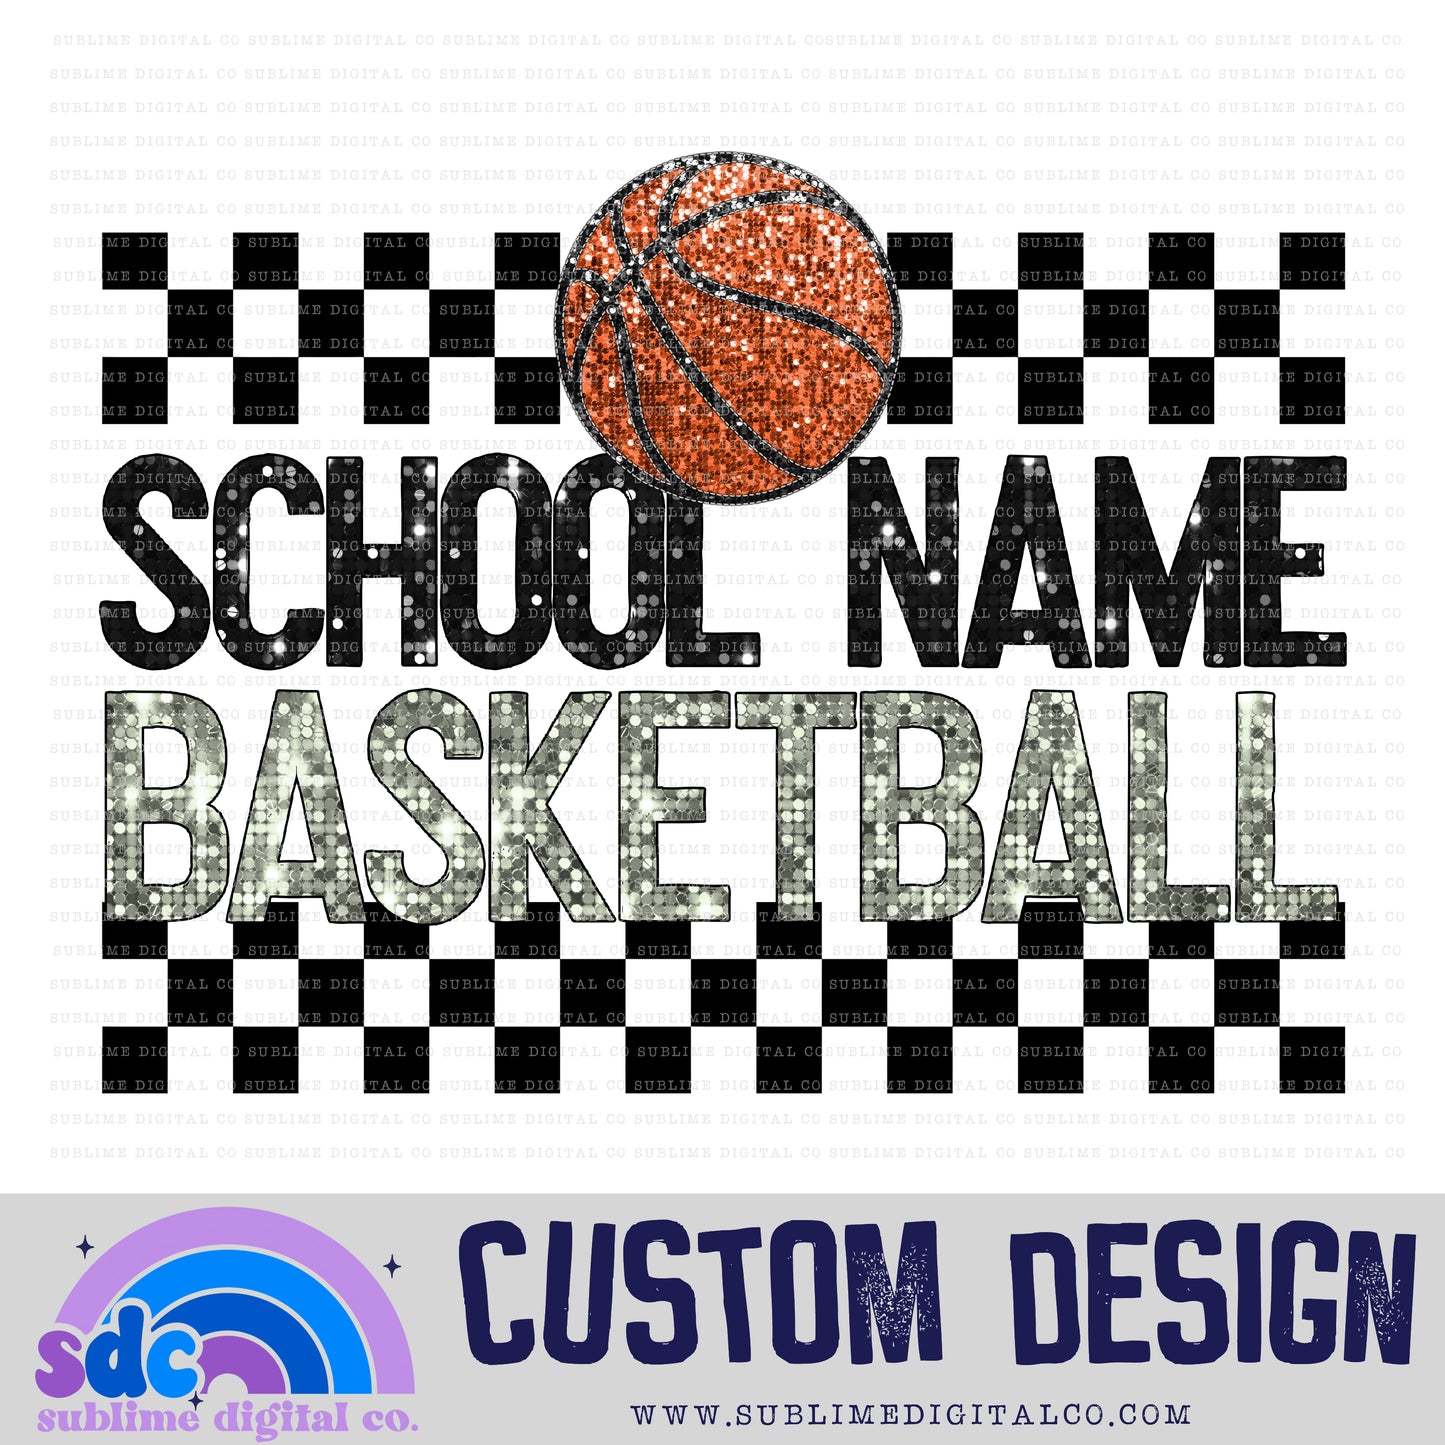 Basketball • Custom Design • Sports • Customs • Instant Download • Sublimation Design